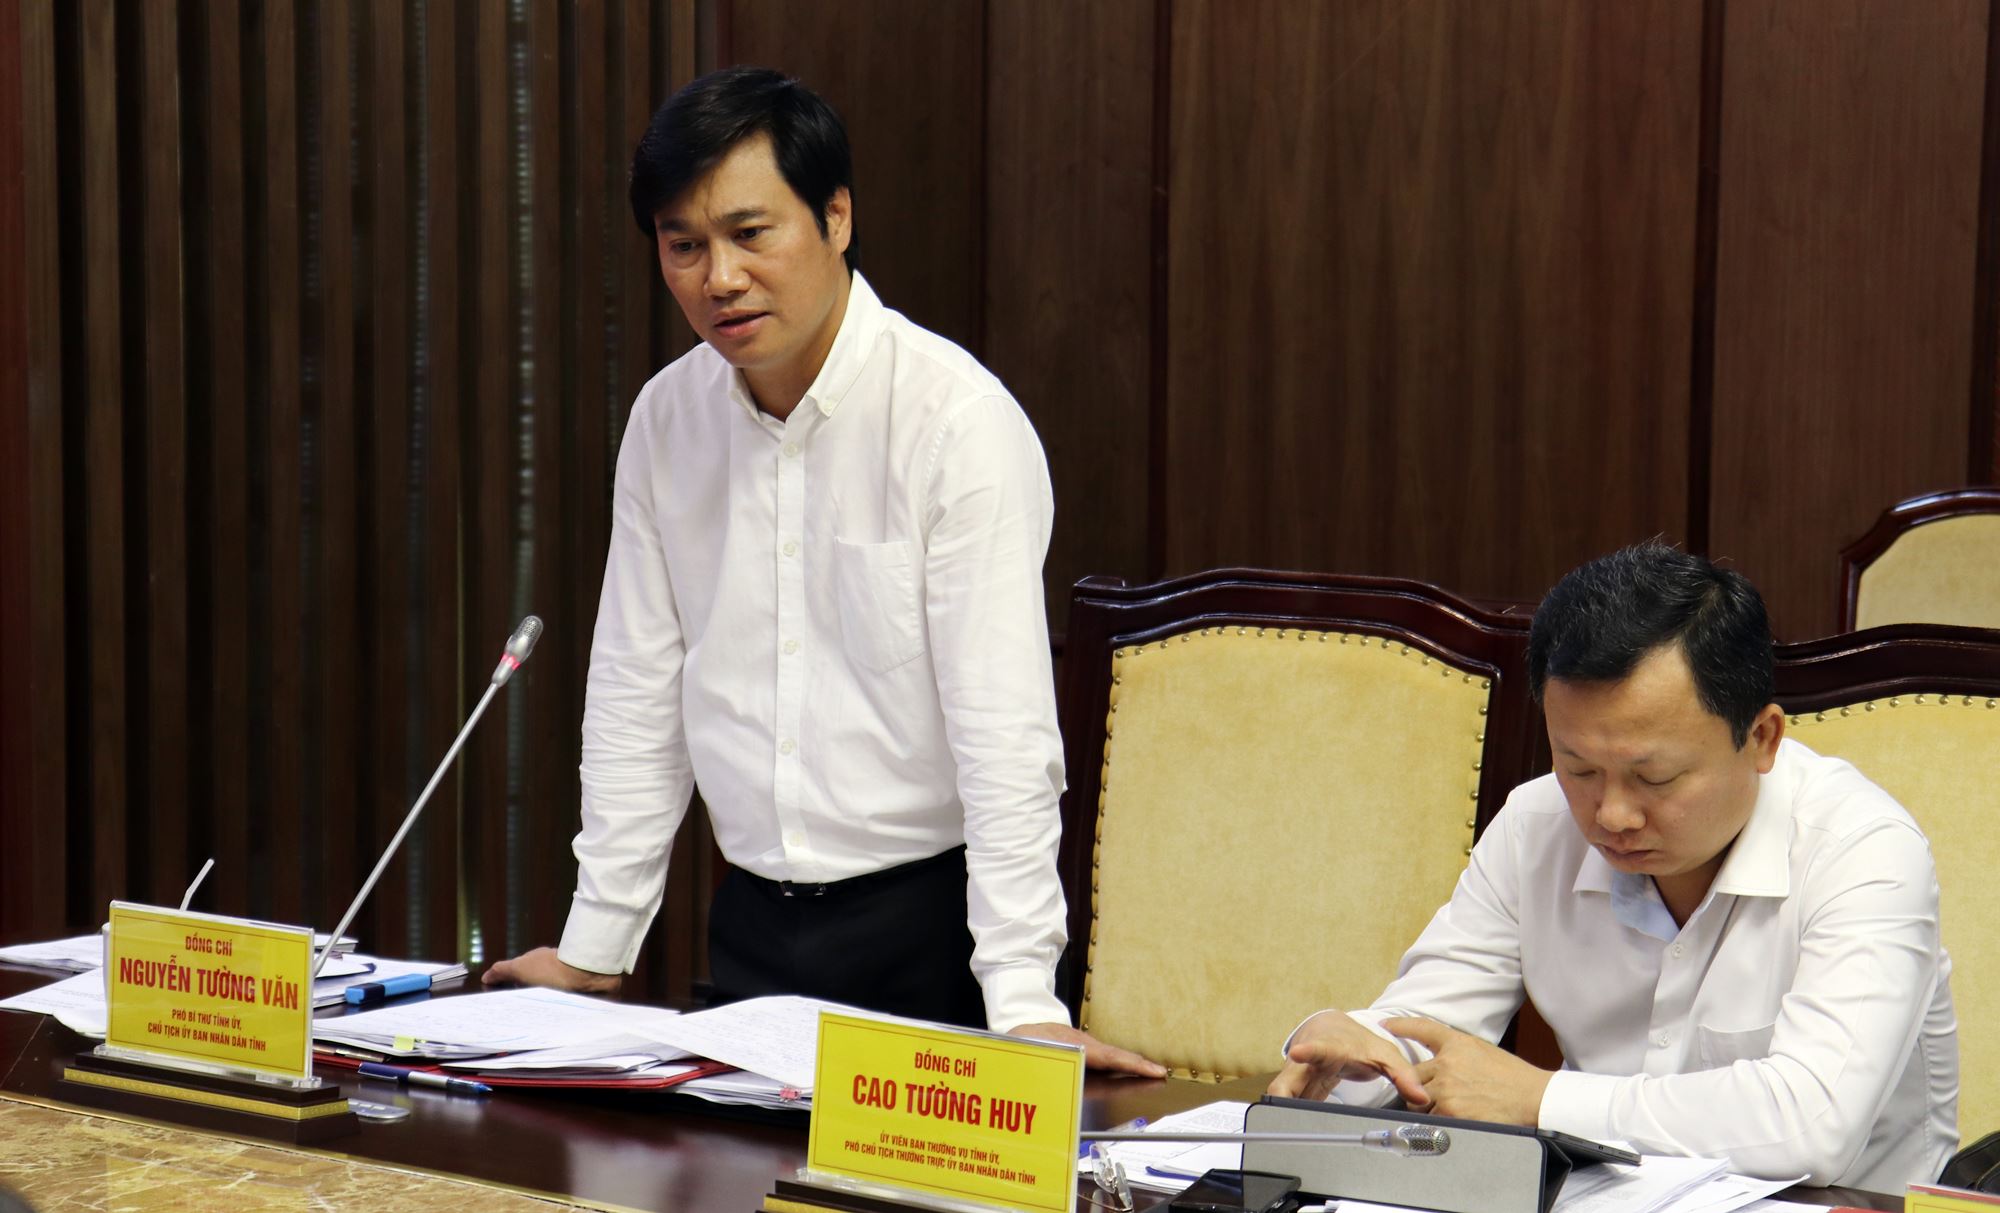 Đồng chí Nguyễn Tường Văn, Chủ tịch UBND tỉnh phát biểu tại hội nghị. 